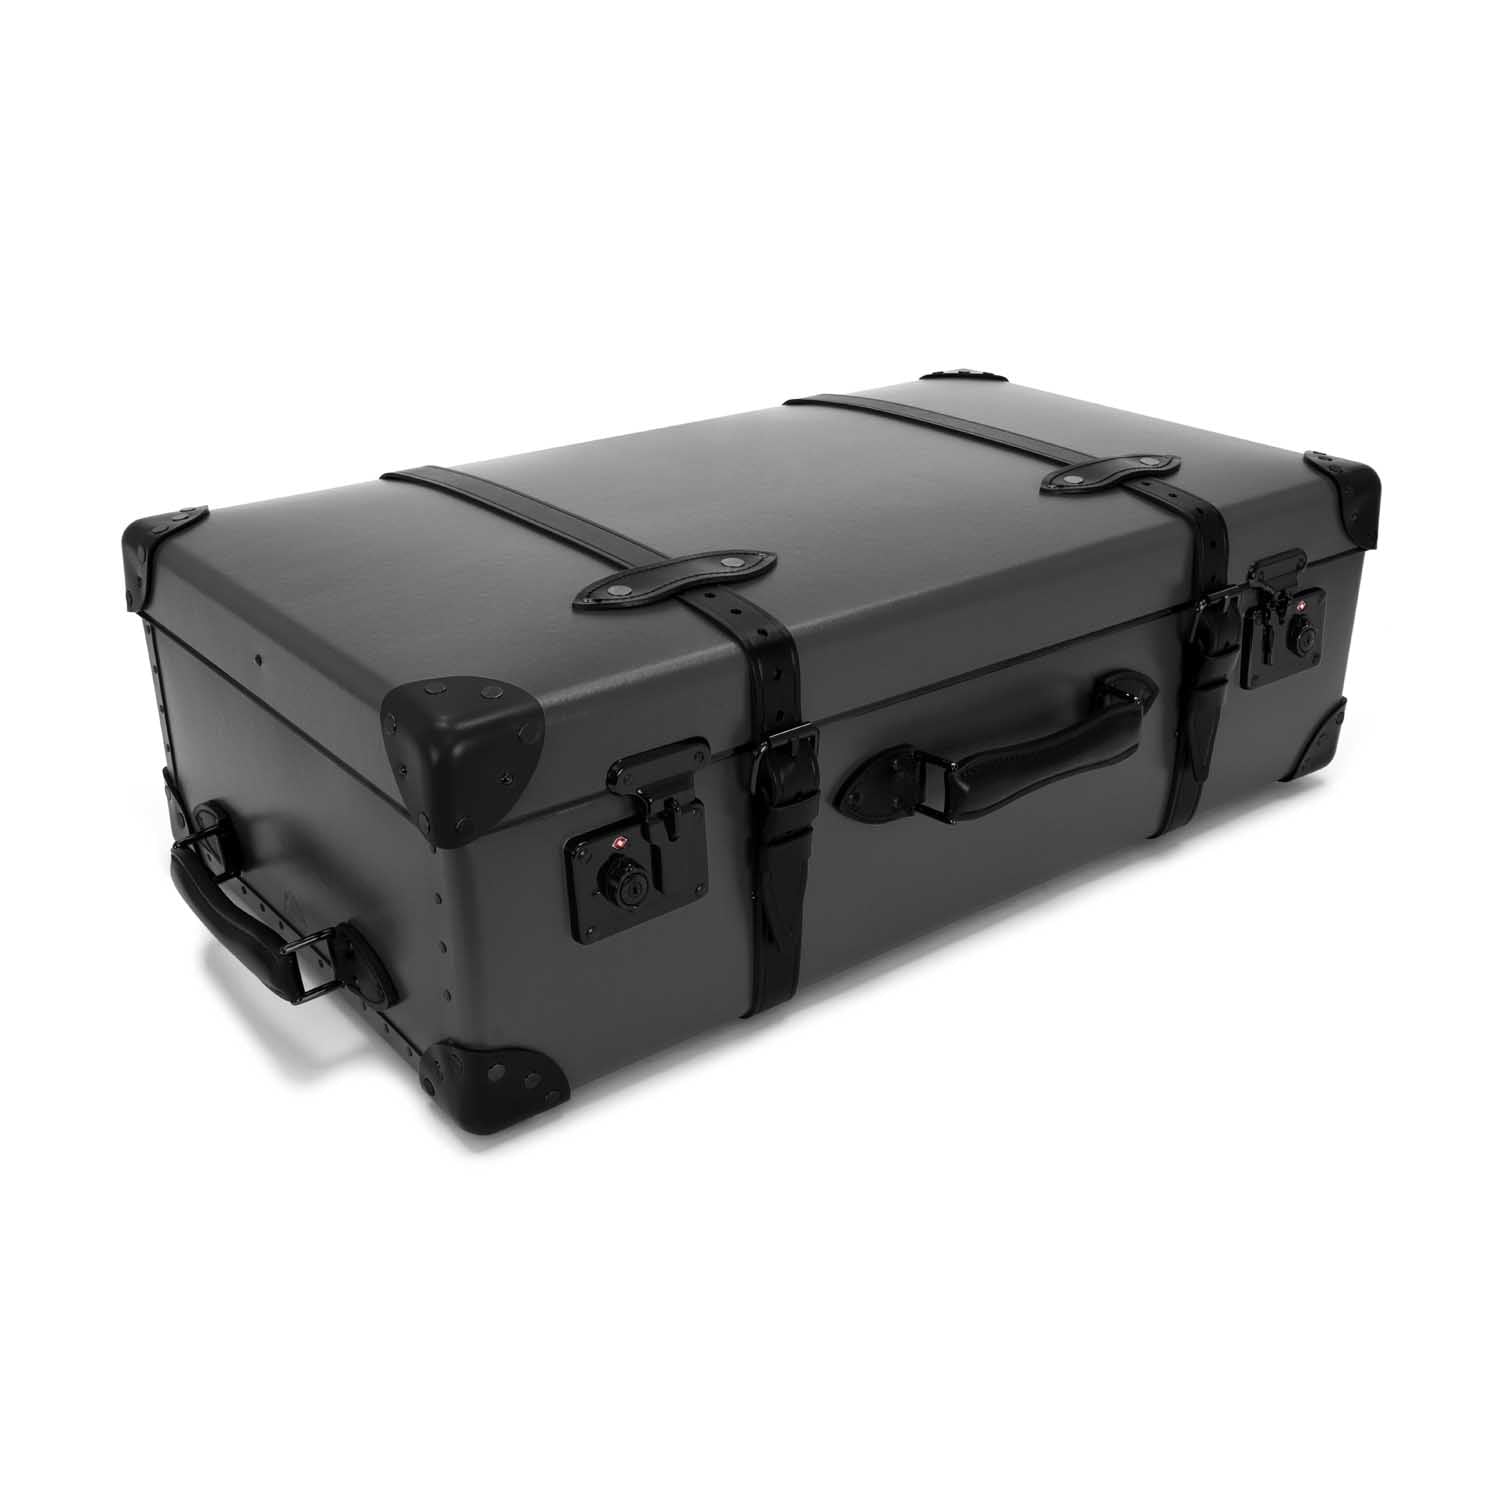 センテナリー · ラージスーツケース | チャコール/ブラック/ブラック